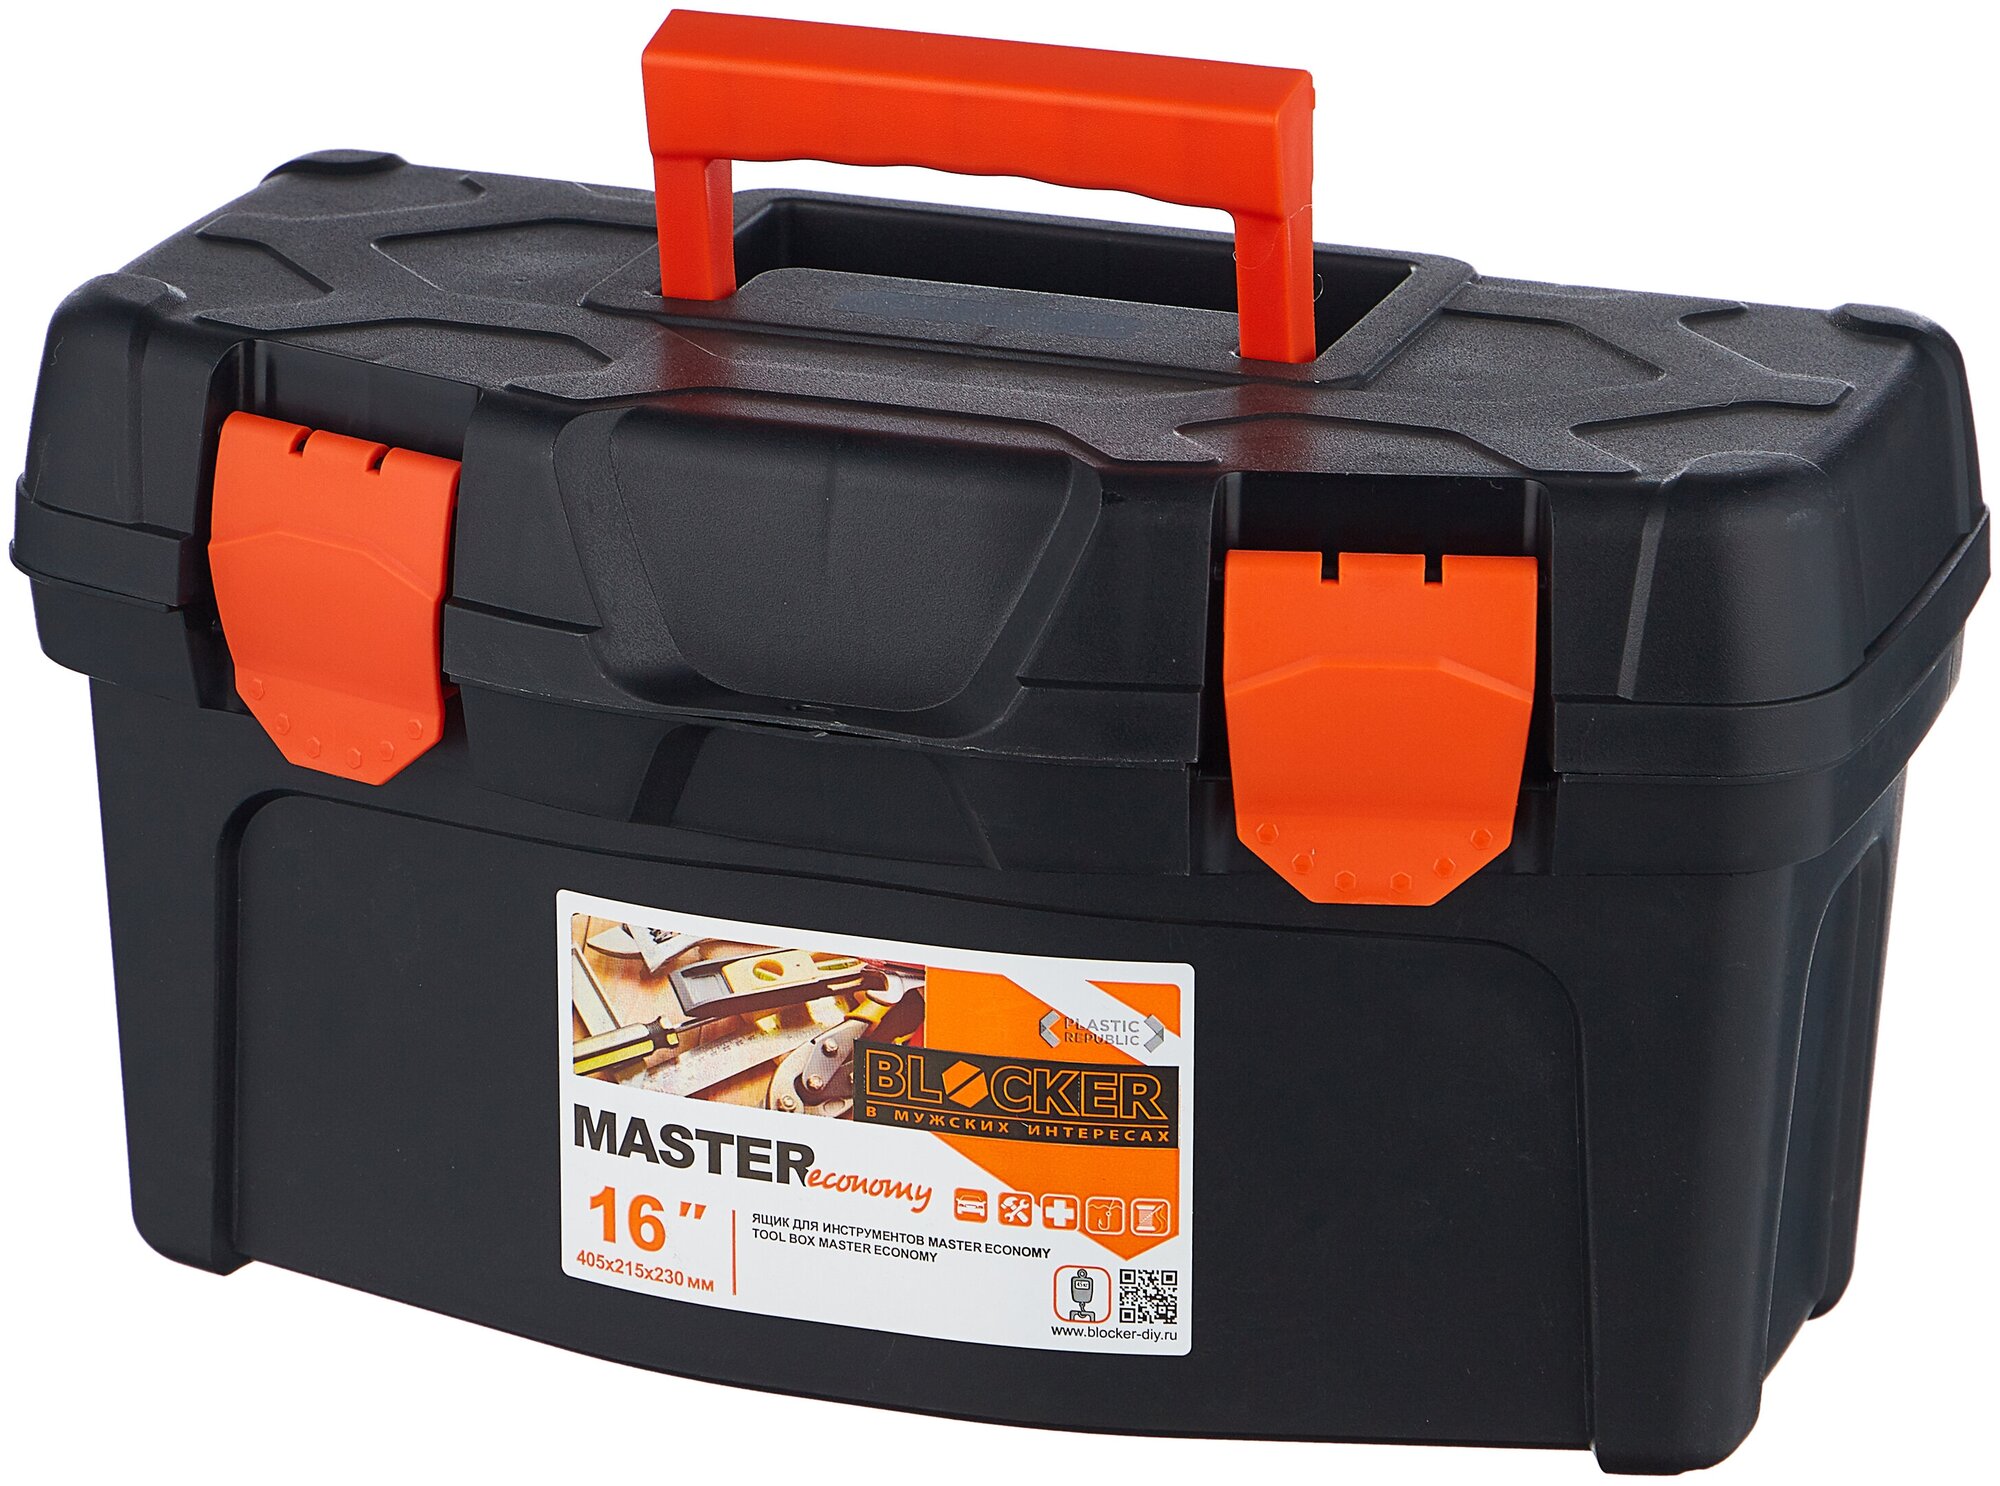 Ящик для инструментов Blocker Master Economy, 40,8 x 21,8 x 22,3 см, черный